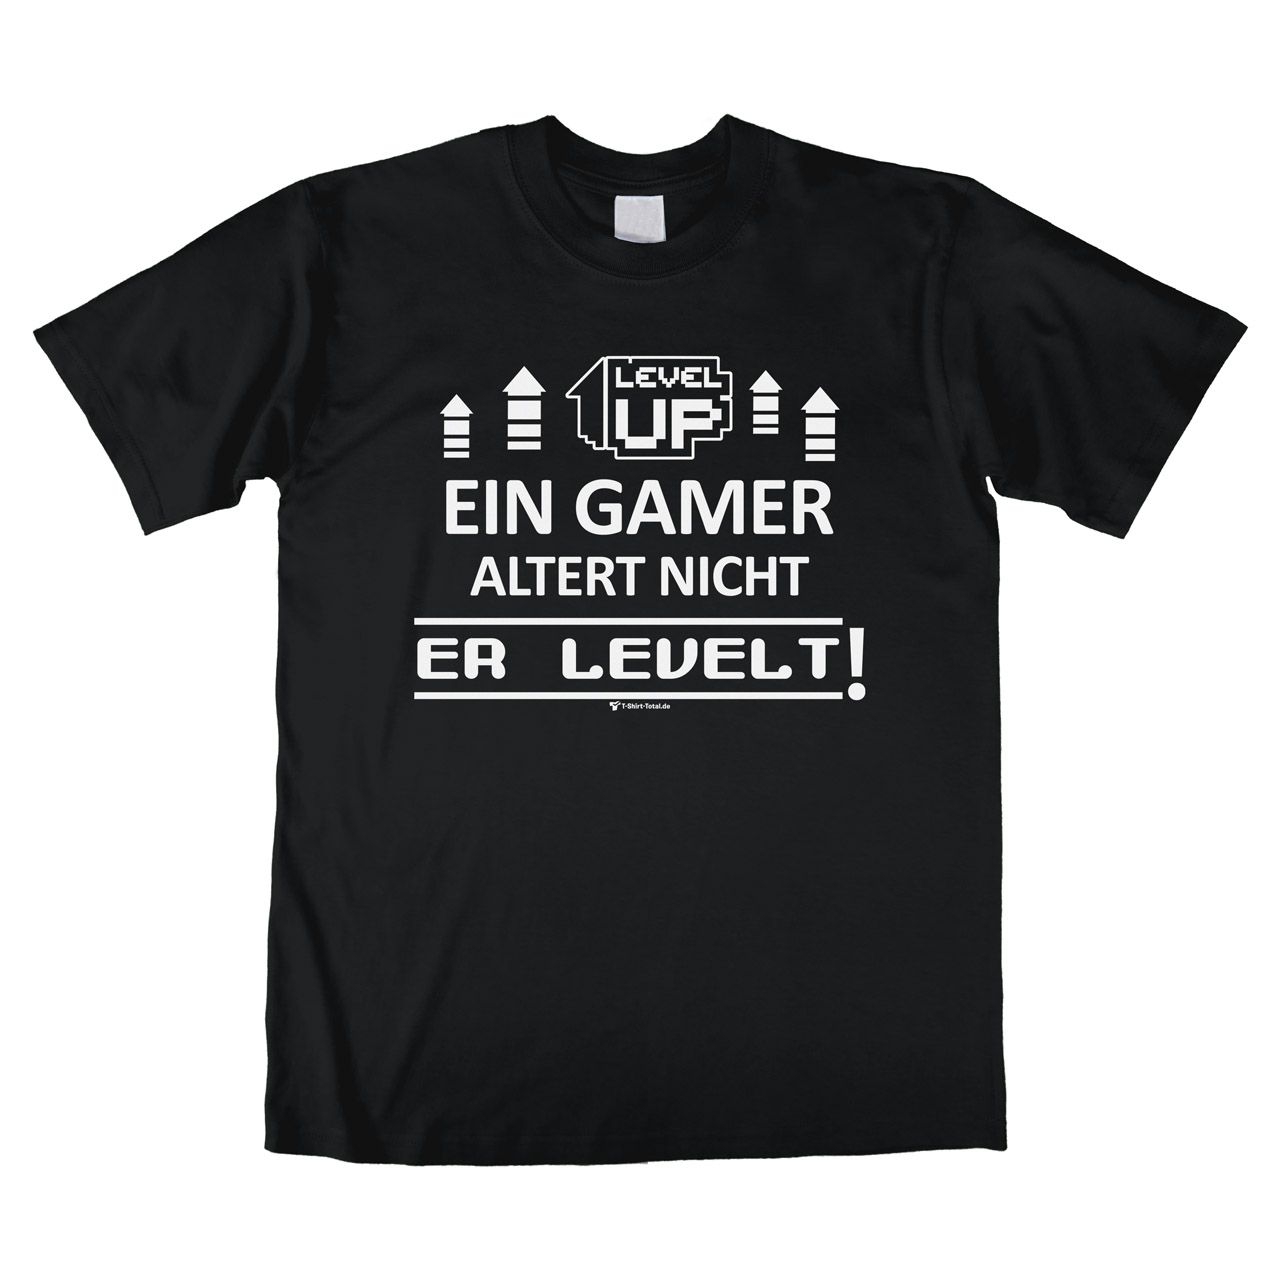 Ein Gamer levelt Unisex T-Shirt schwarz Medium